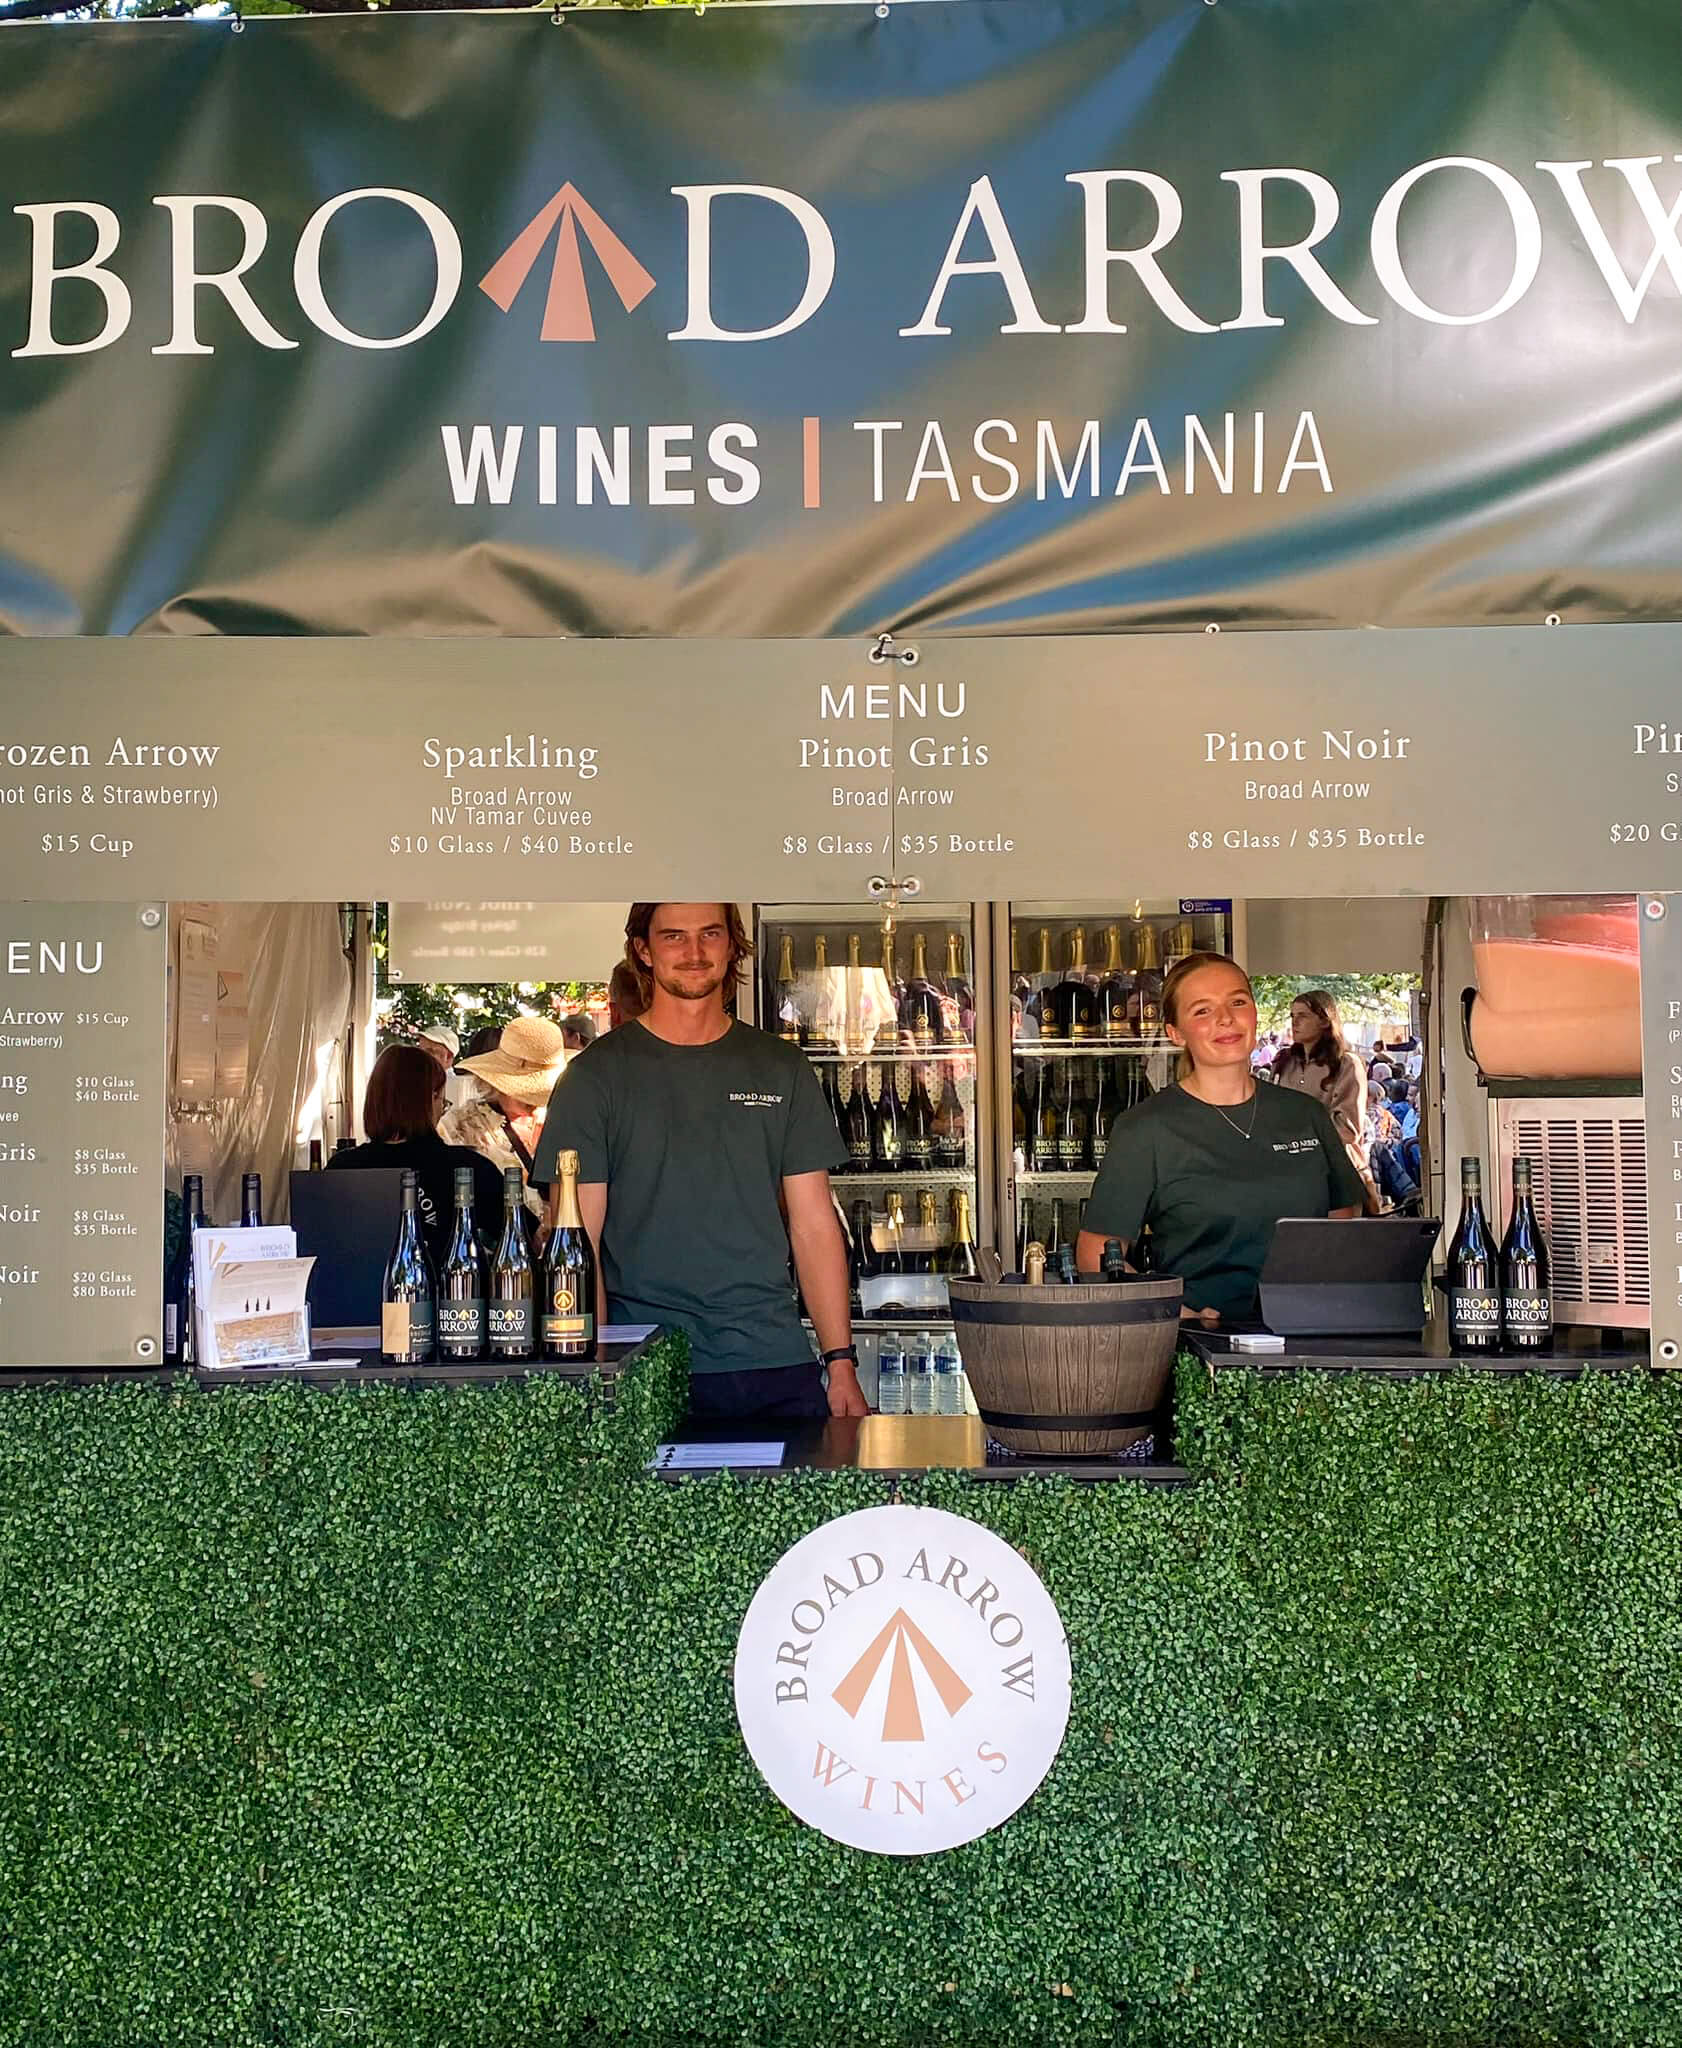 Broadarrow Wine Tasmania Festivale Signage